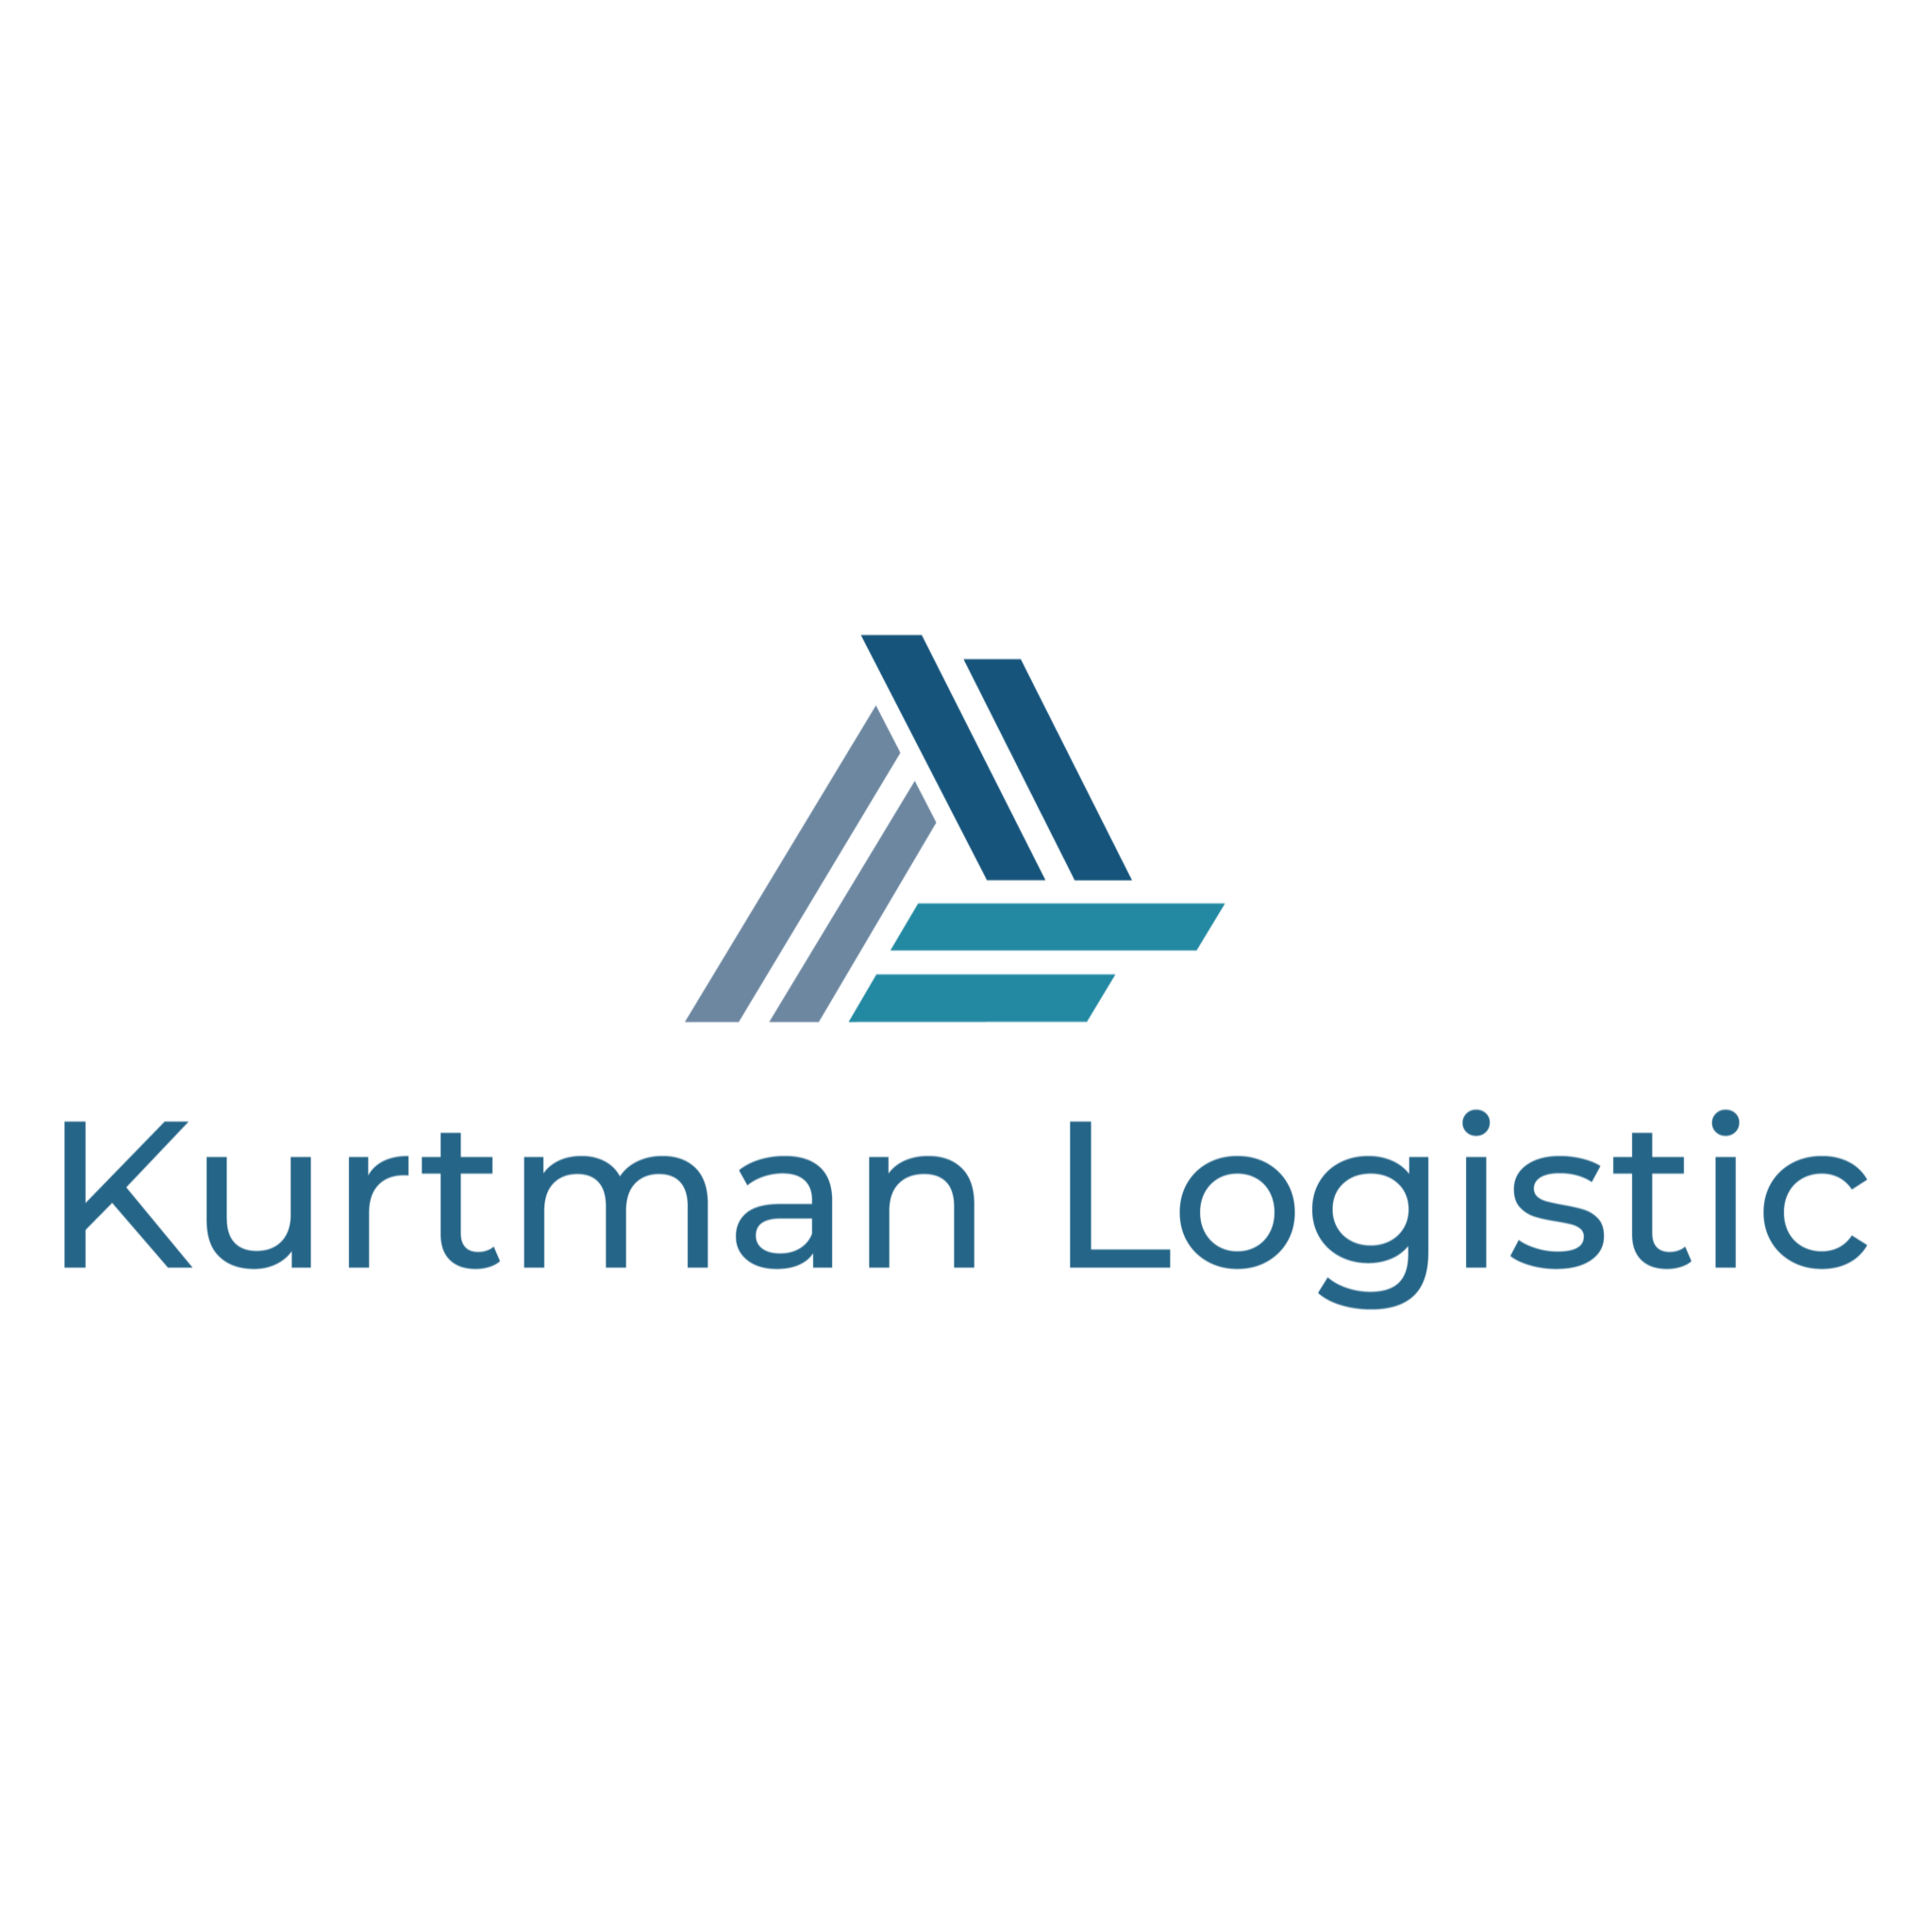 Kurtman Logistic